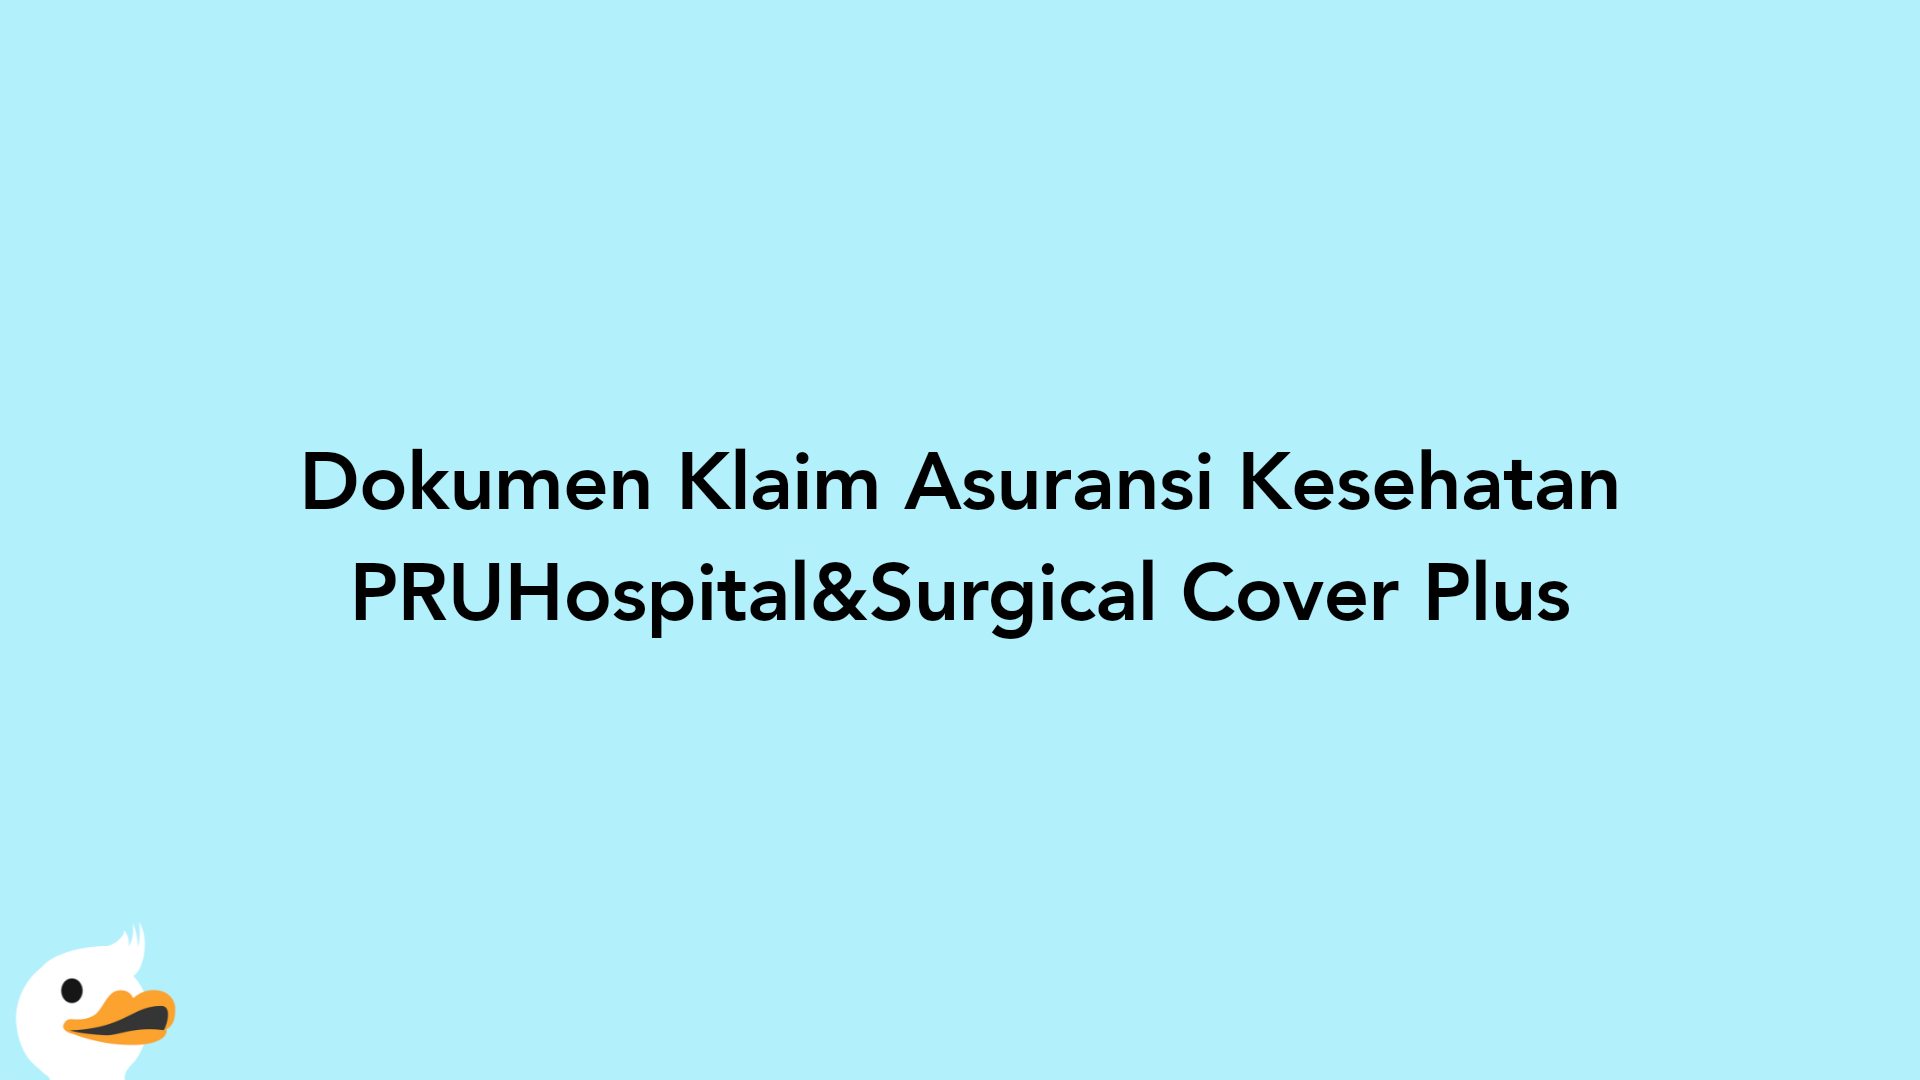 Dokumen Klaim Asuransi Kesehatan PRUHospital&Surgical Cover Plus